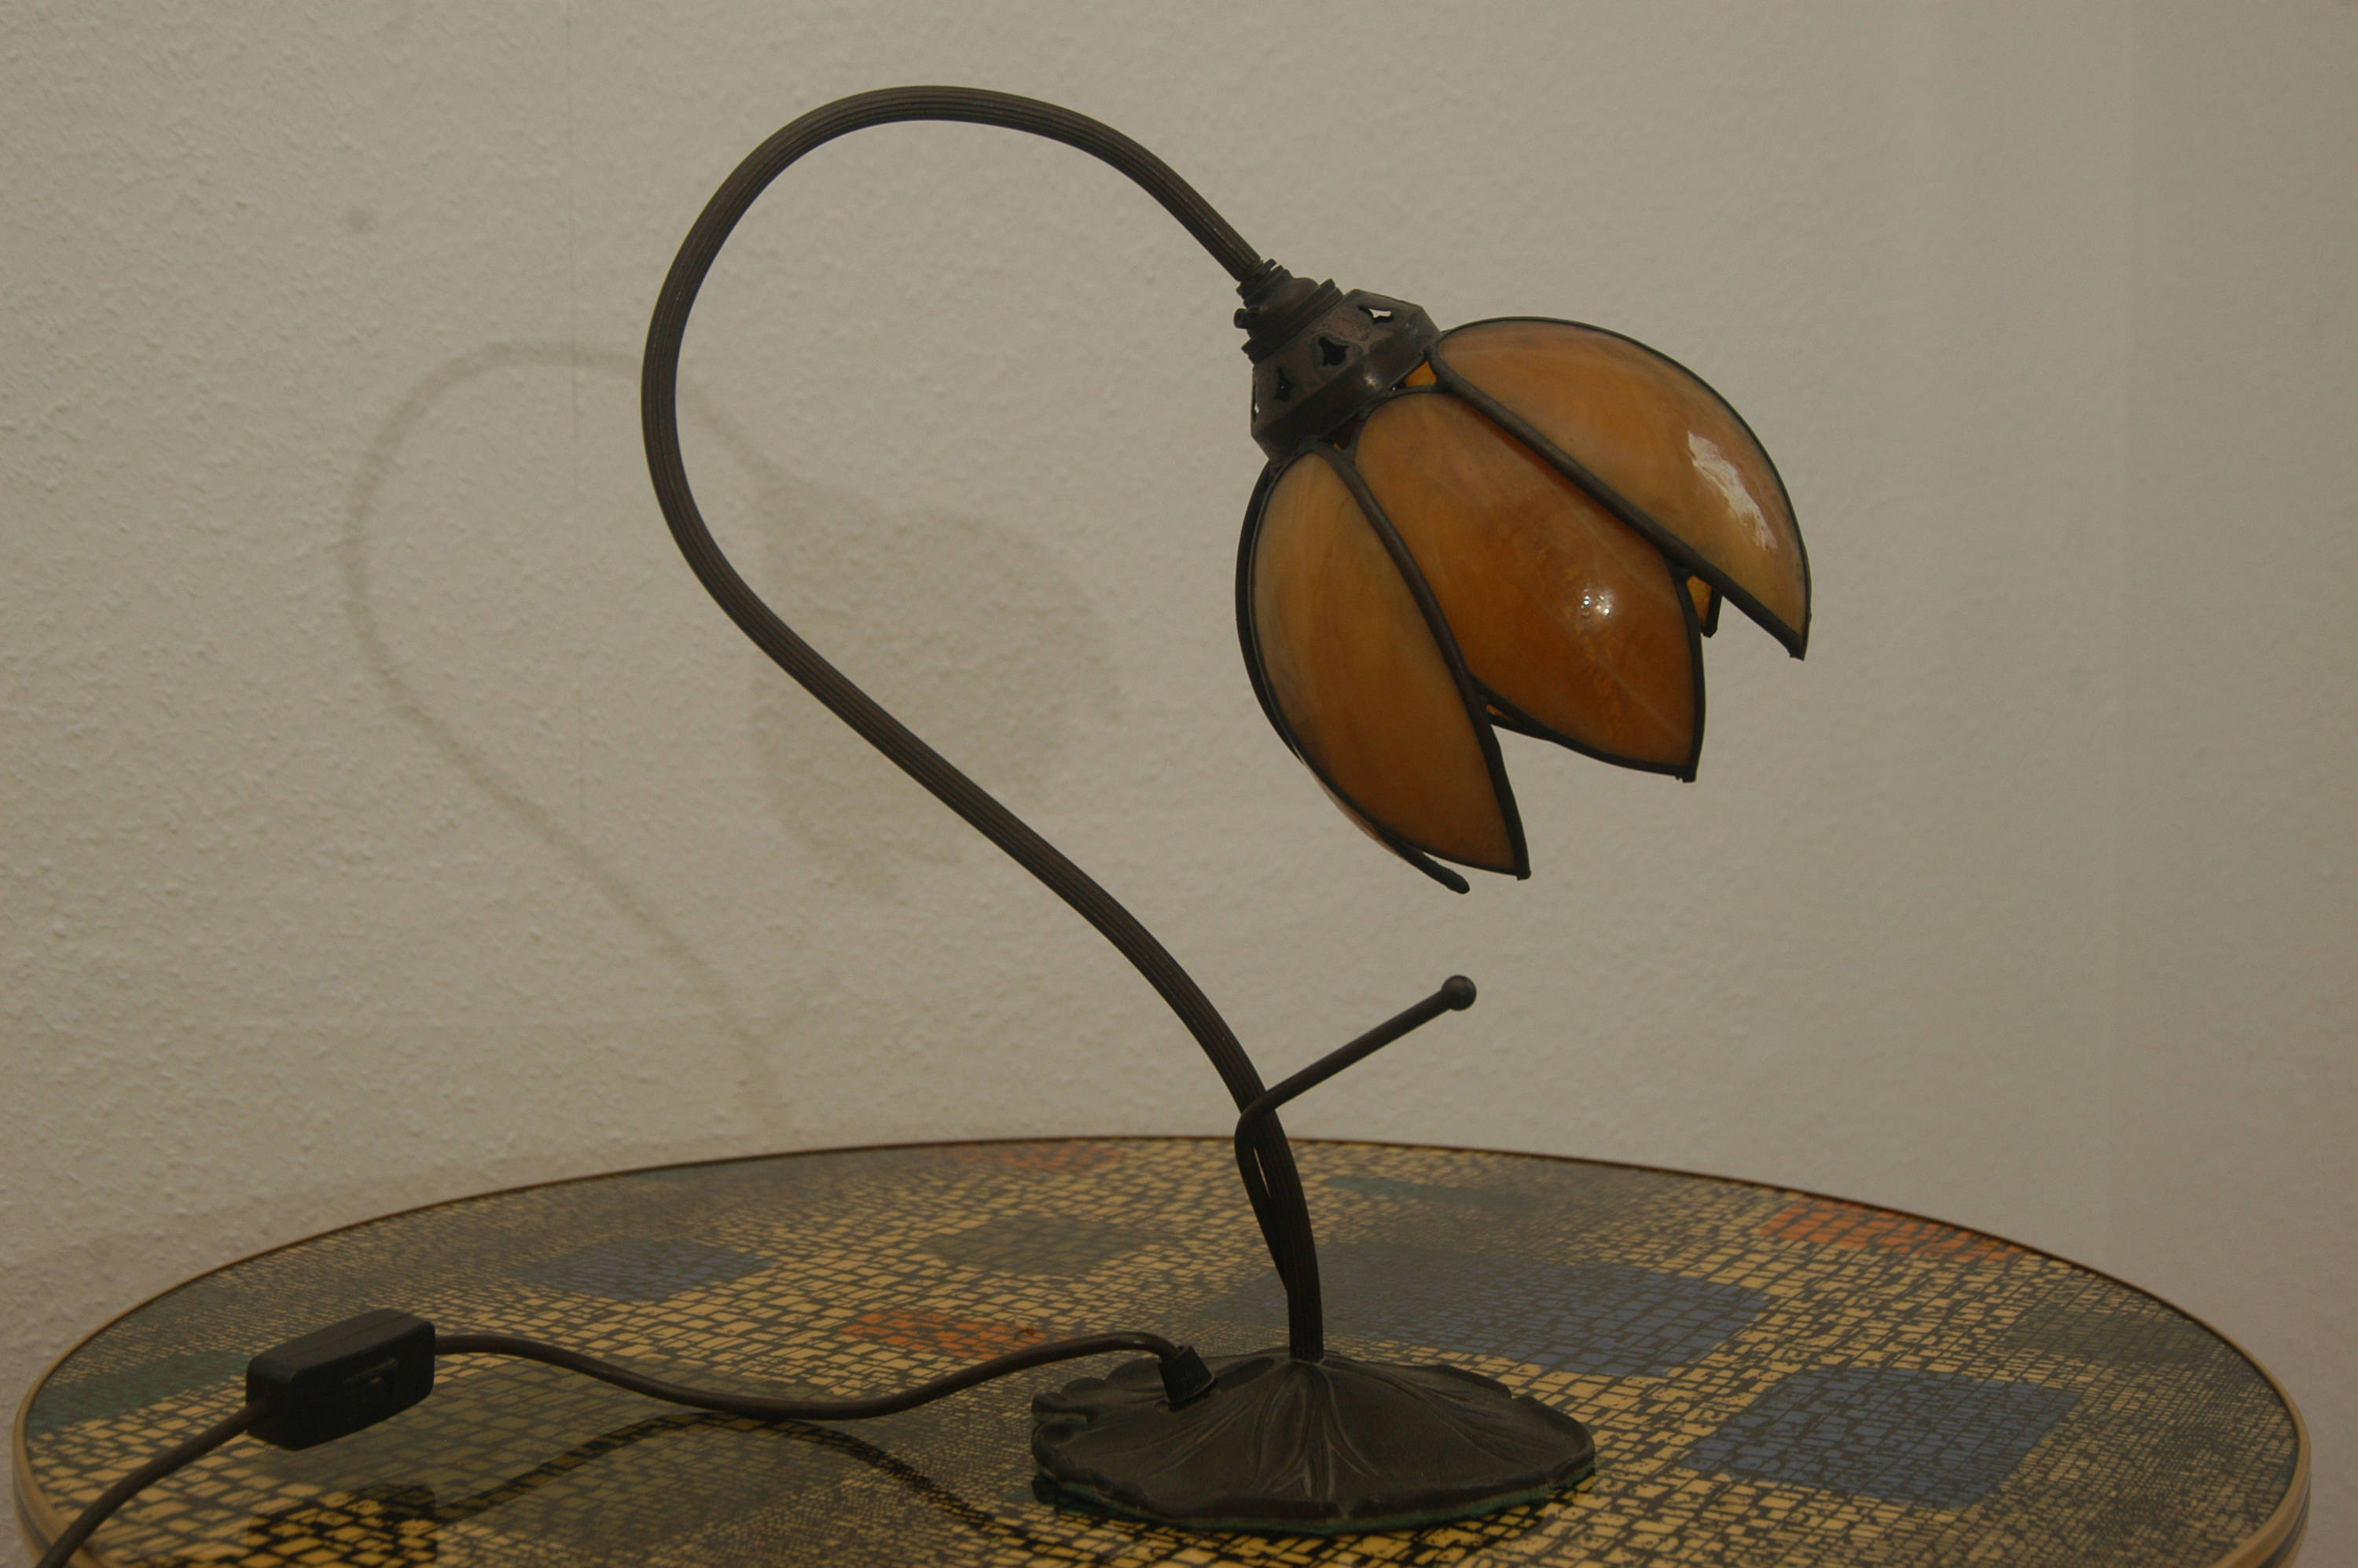 GDR Table Lamp Light 60s Lamp Lamp Table Lights Design Mid Century